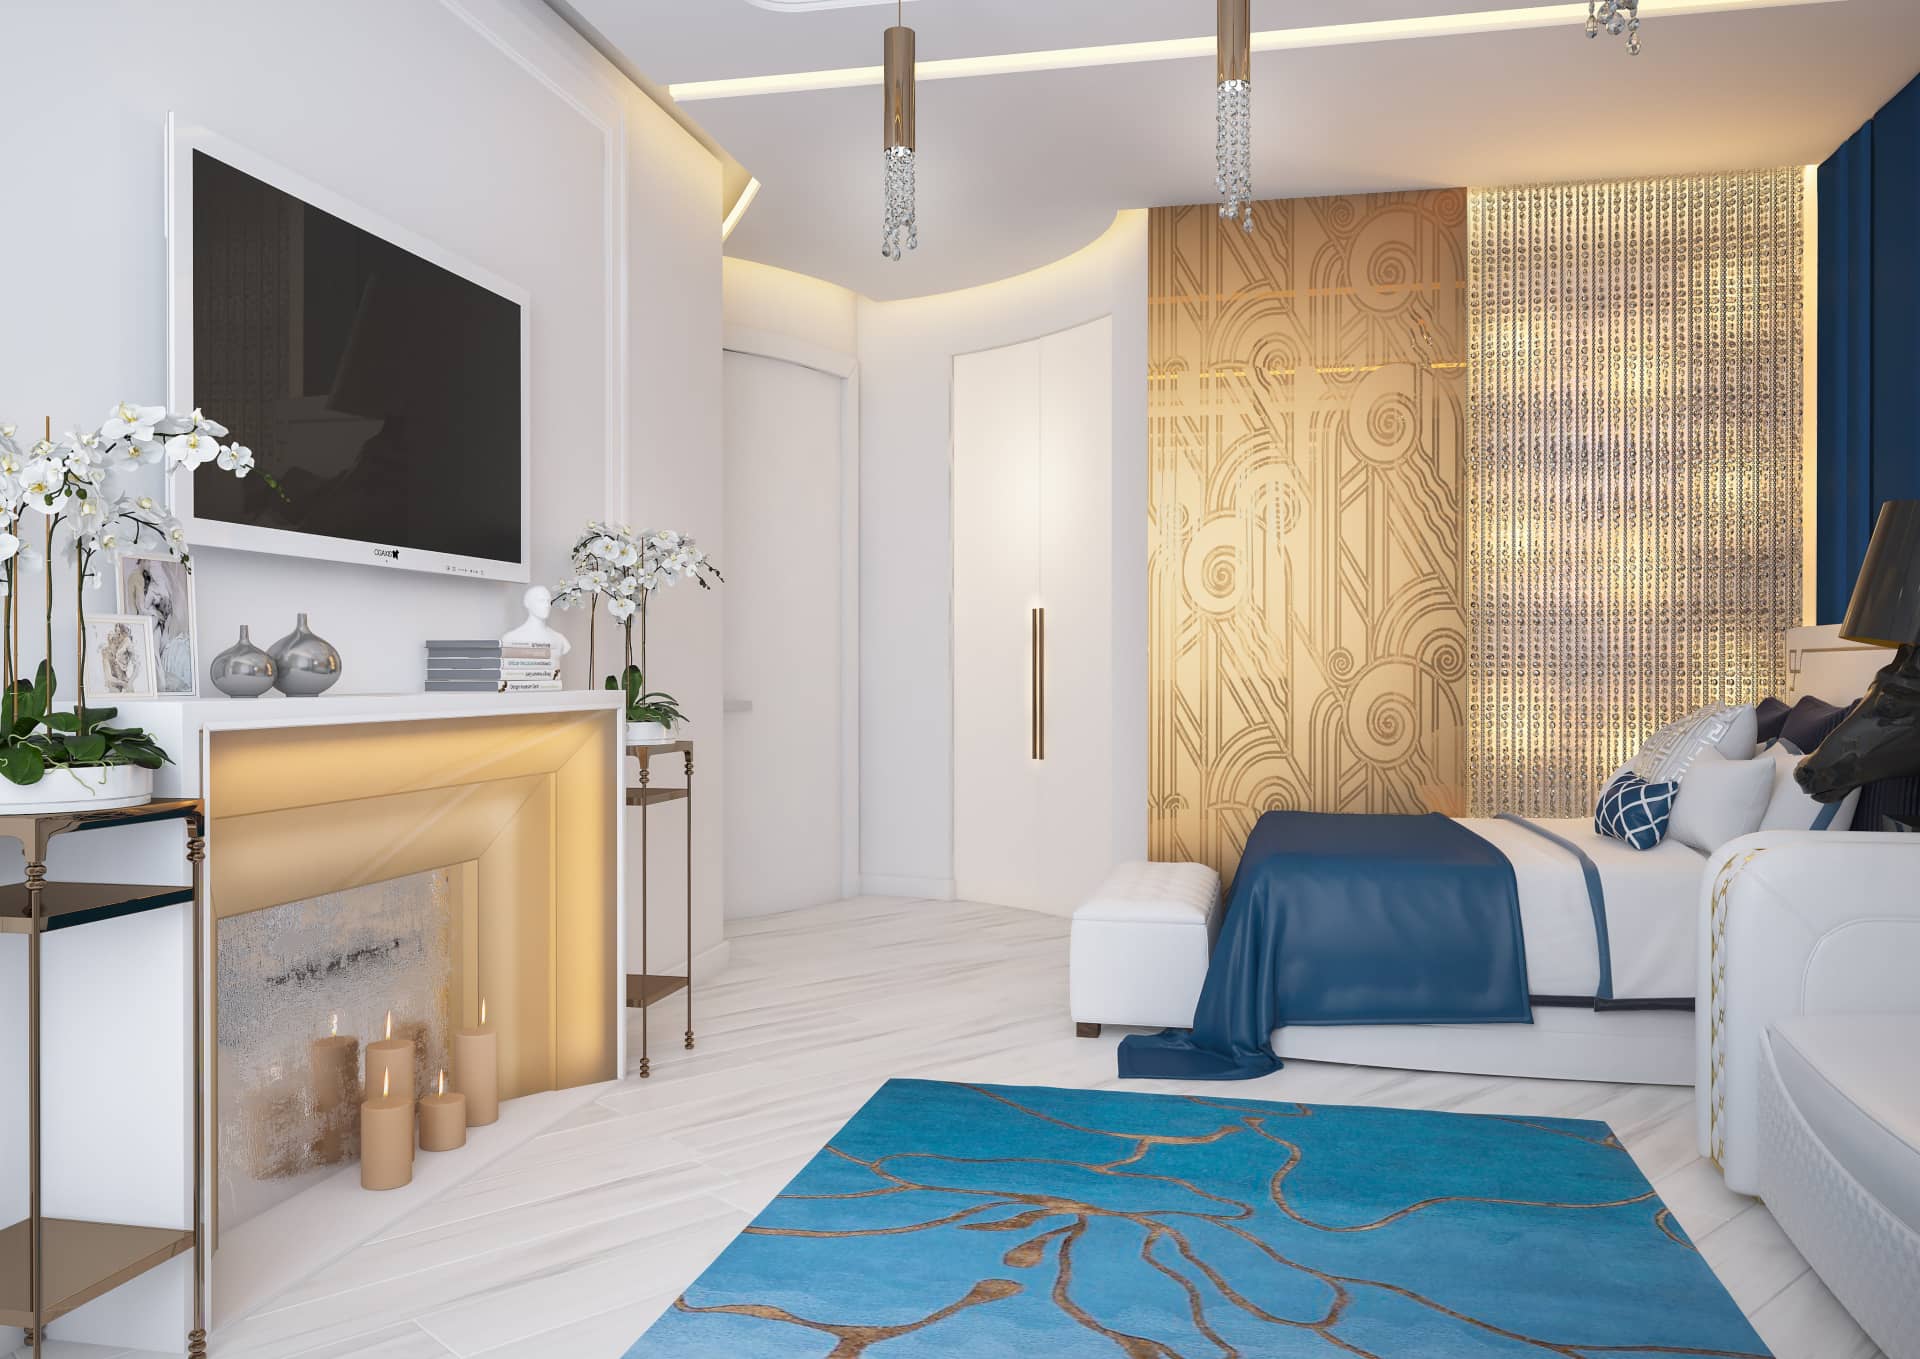 Стены с золотистым узором для комнаты в стиле арт-деко